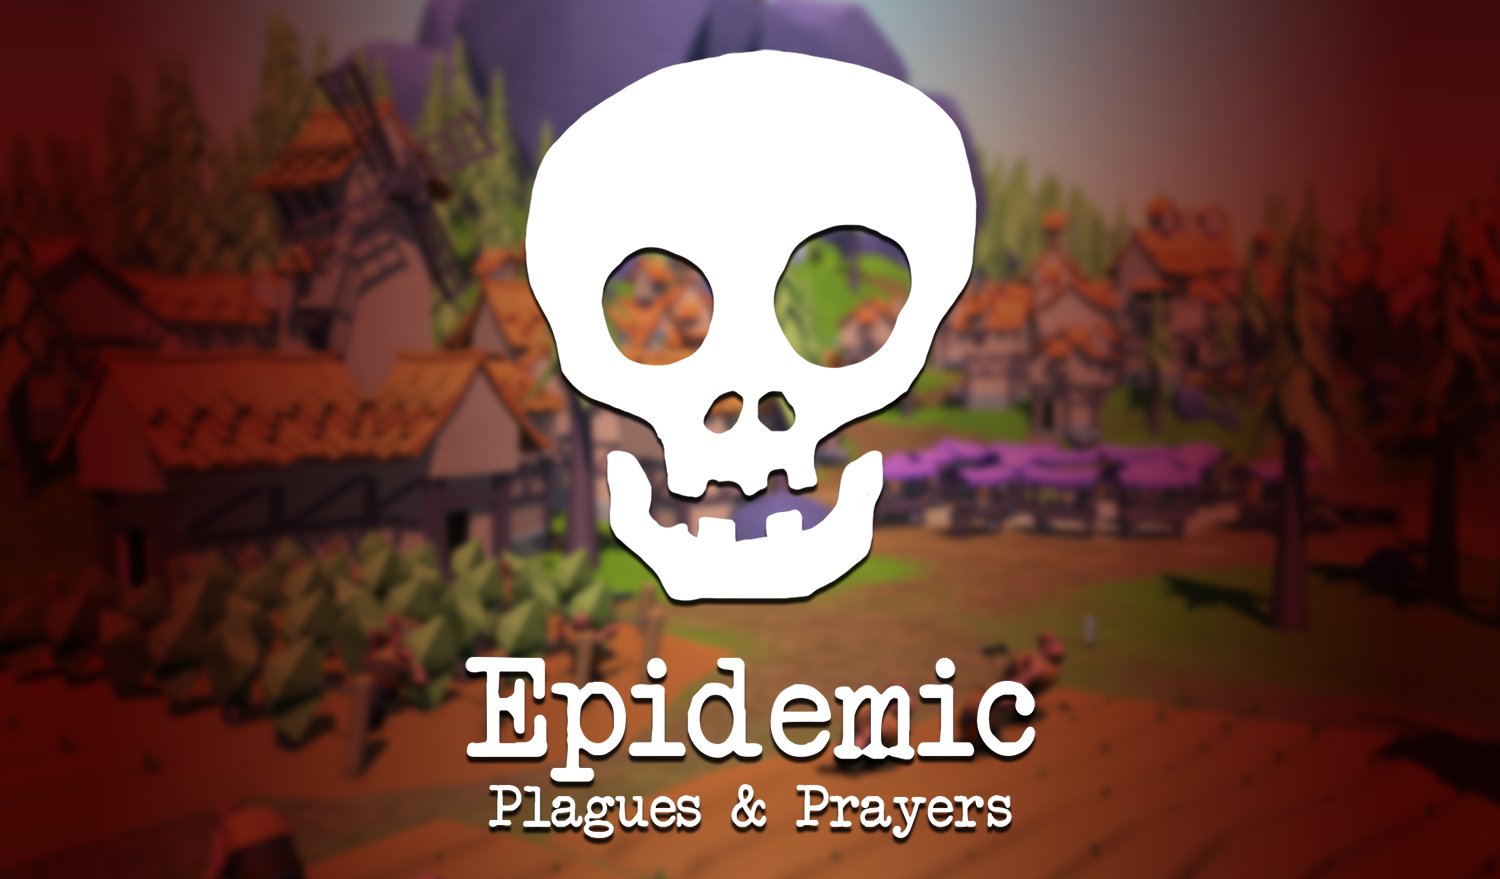 Epidemic: Plagues & Prayers